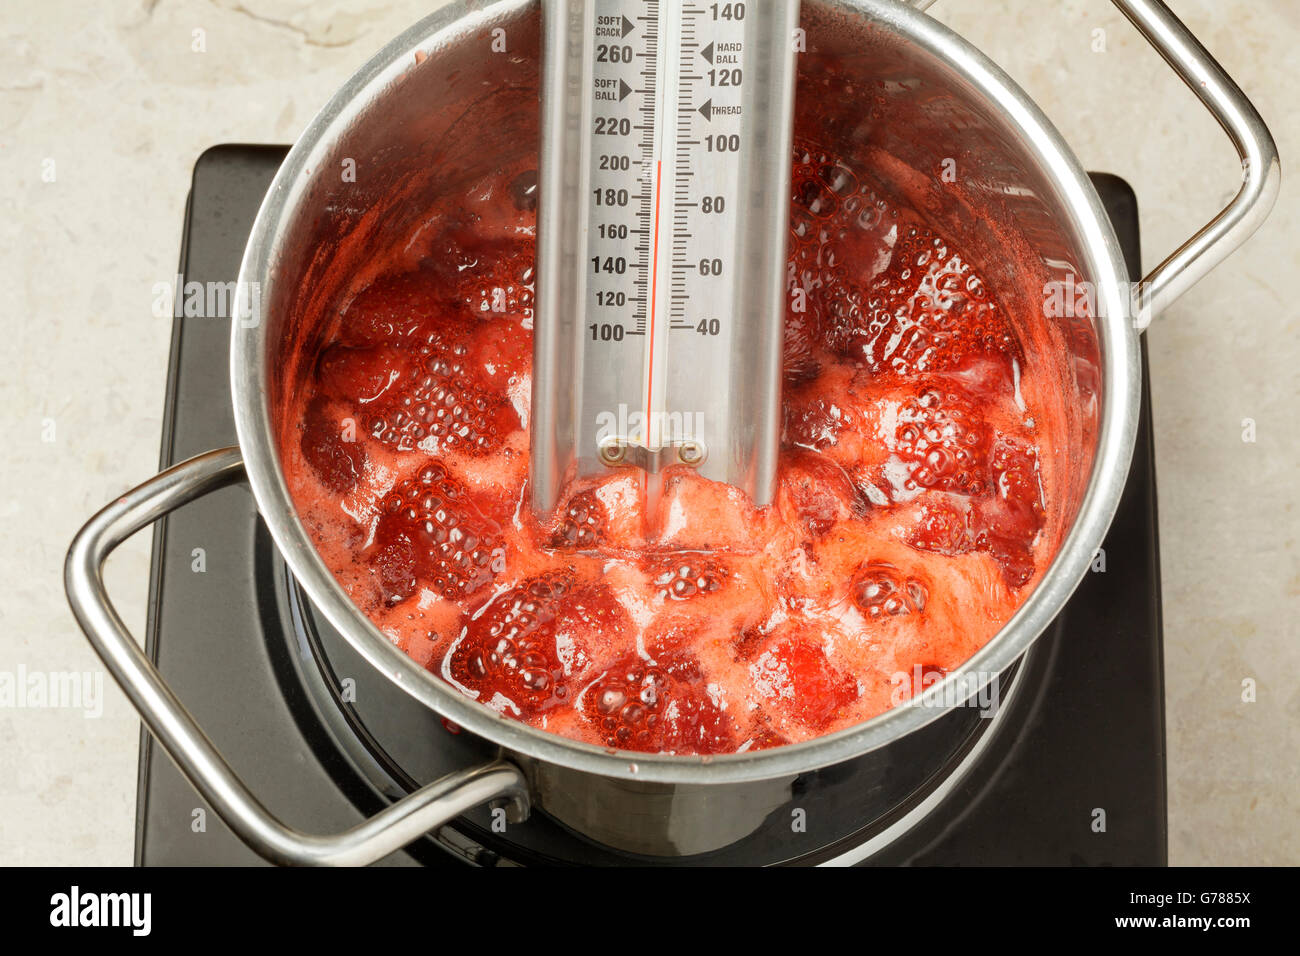 Thermometer messen die Temperatur der Erdbeermarmelade in einer Pfanne  Kochen Stockfotografie - Alamy